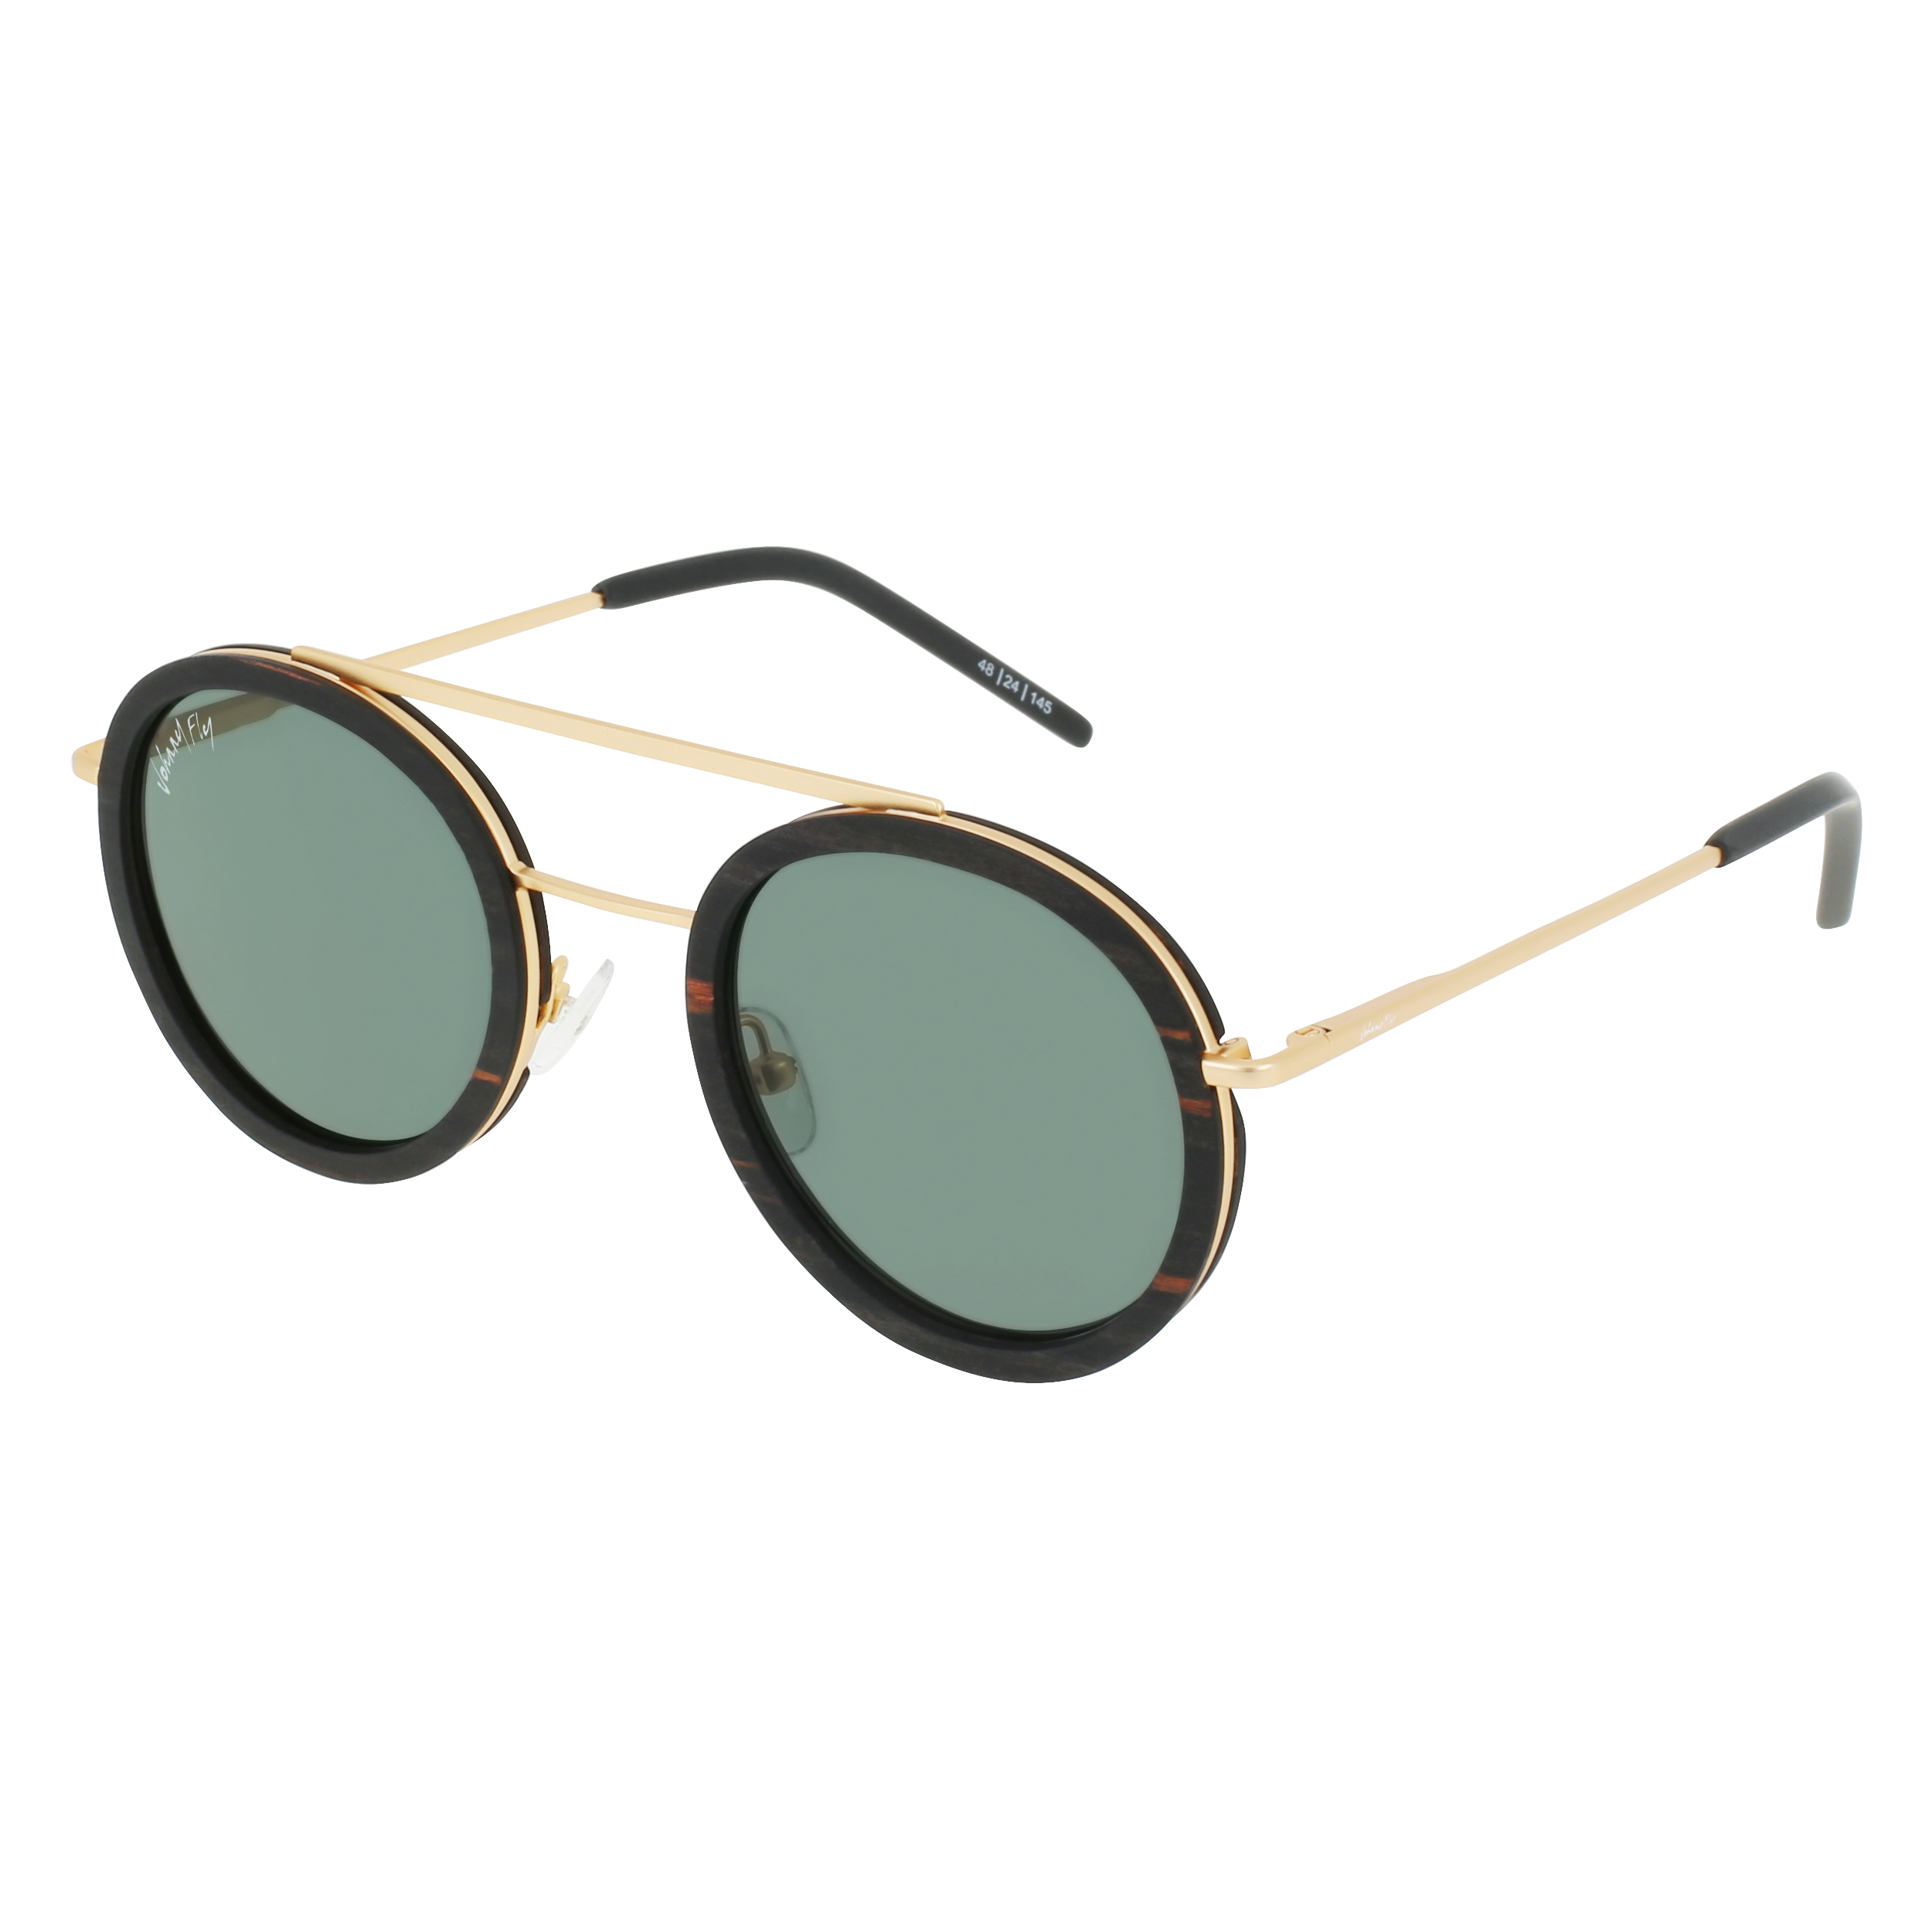 Louis Vuitton - Sunglasses - S-264 